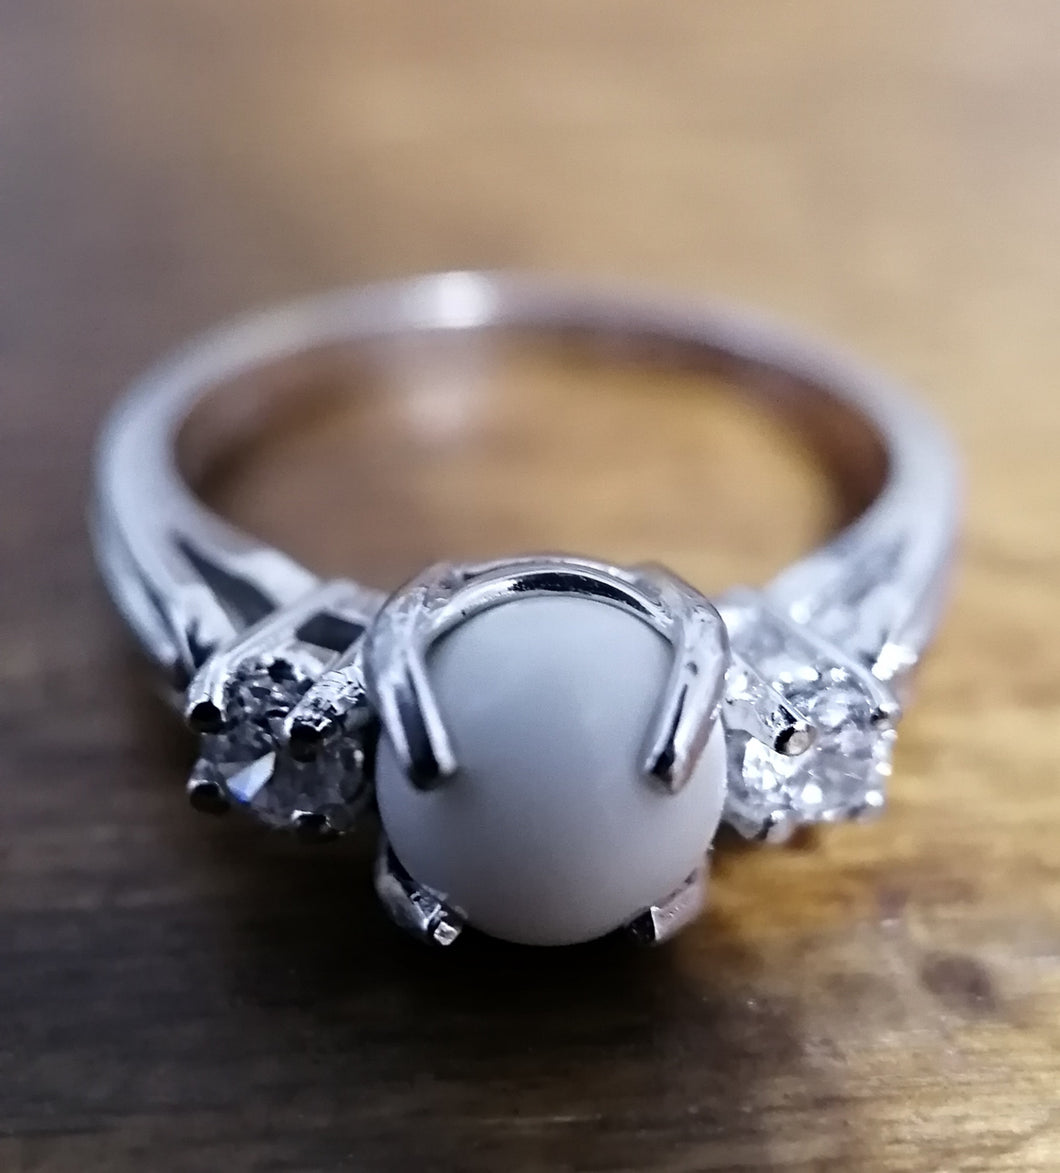 Une Bague Trinité personnalisable élégante en argent avec une perle centrale laiteuse flanquée de petits cristaux clairs, posée sur une surface en bois de la Bijouterie Langlois.